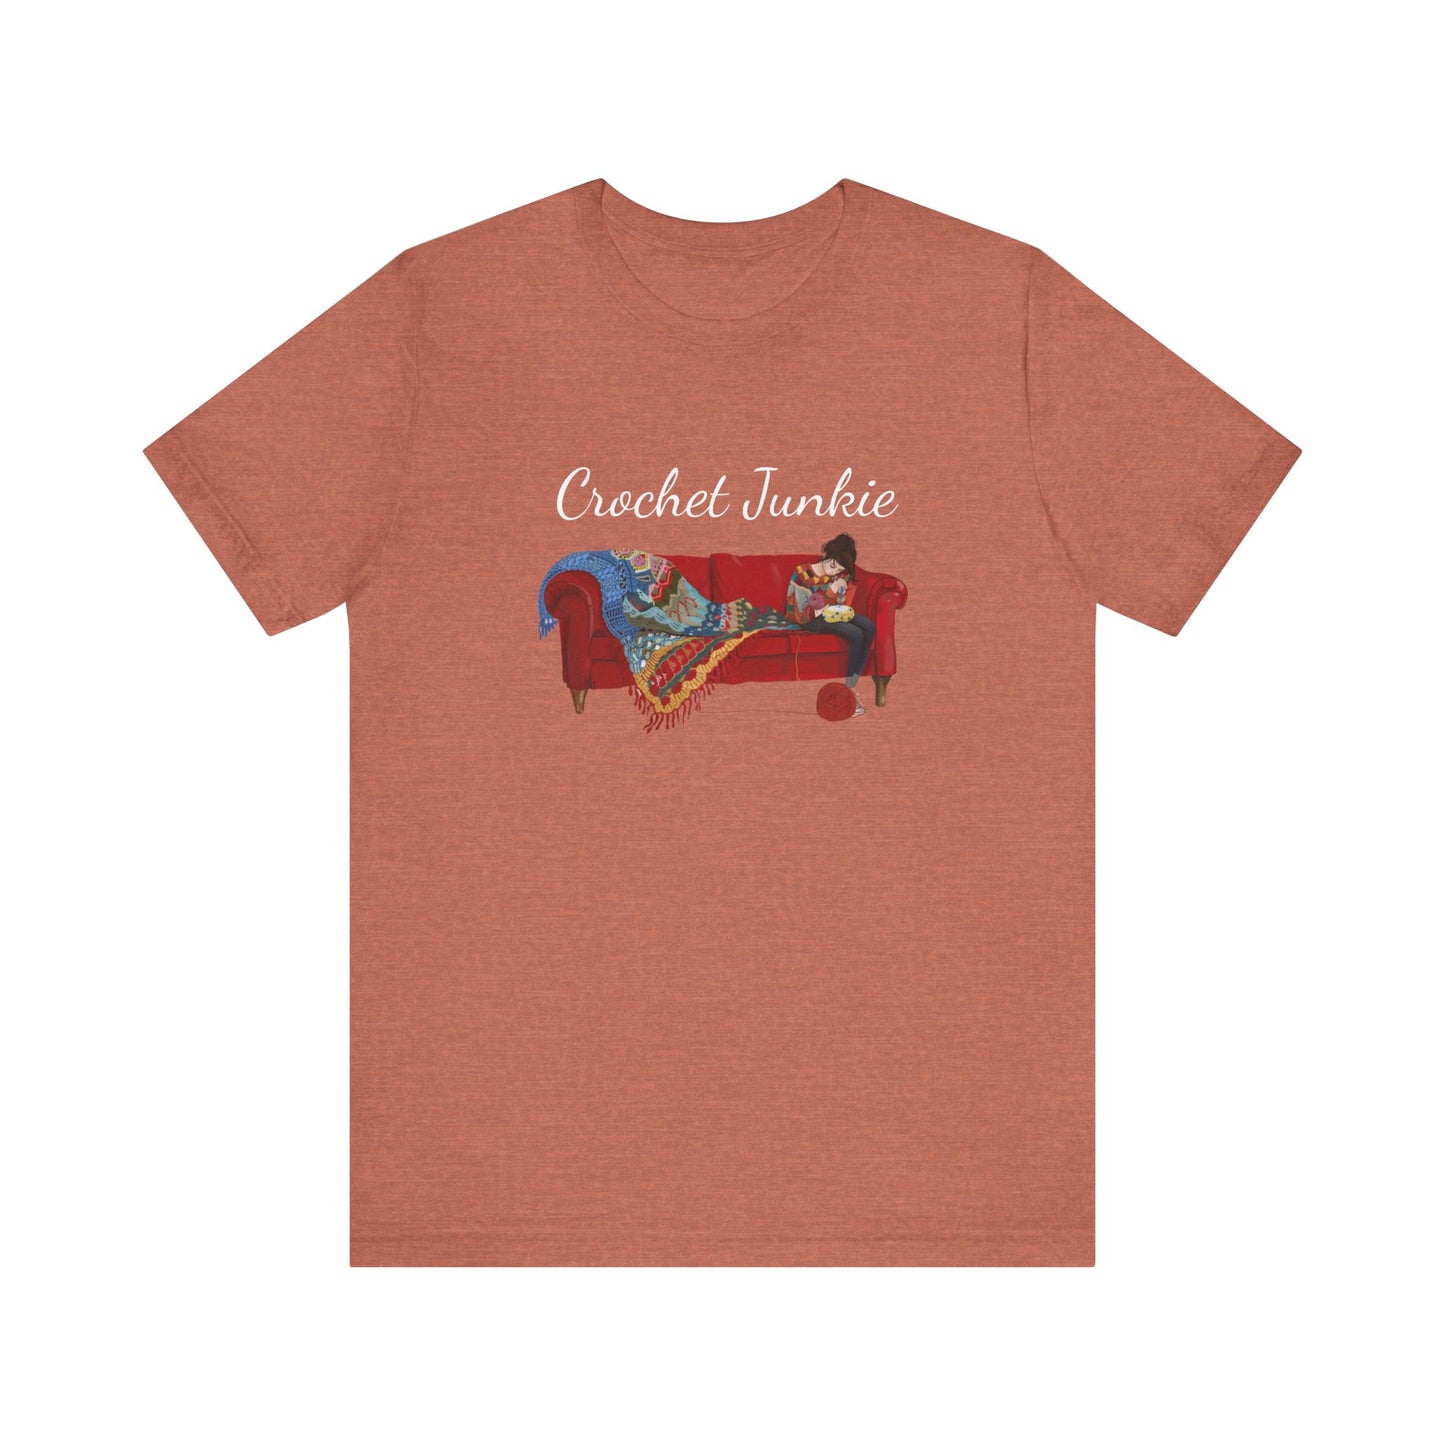 "Crochet junkie" Tshirt